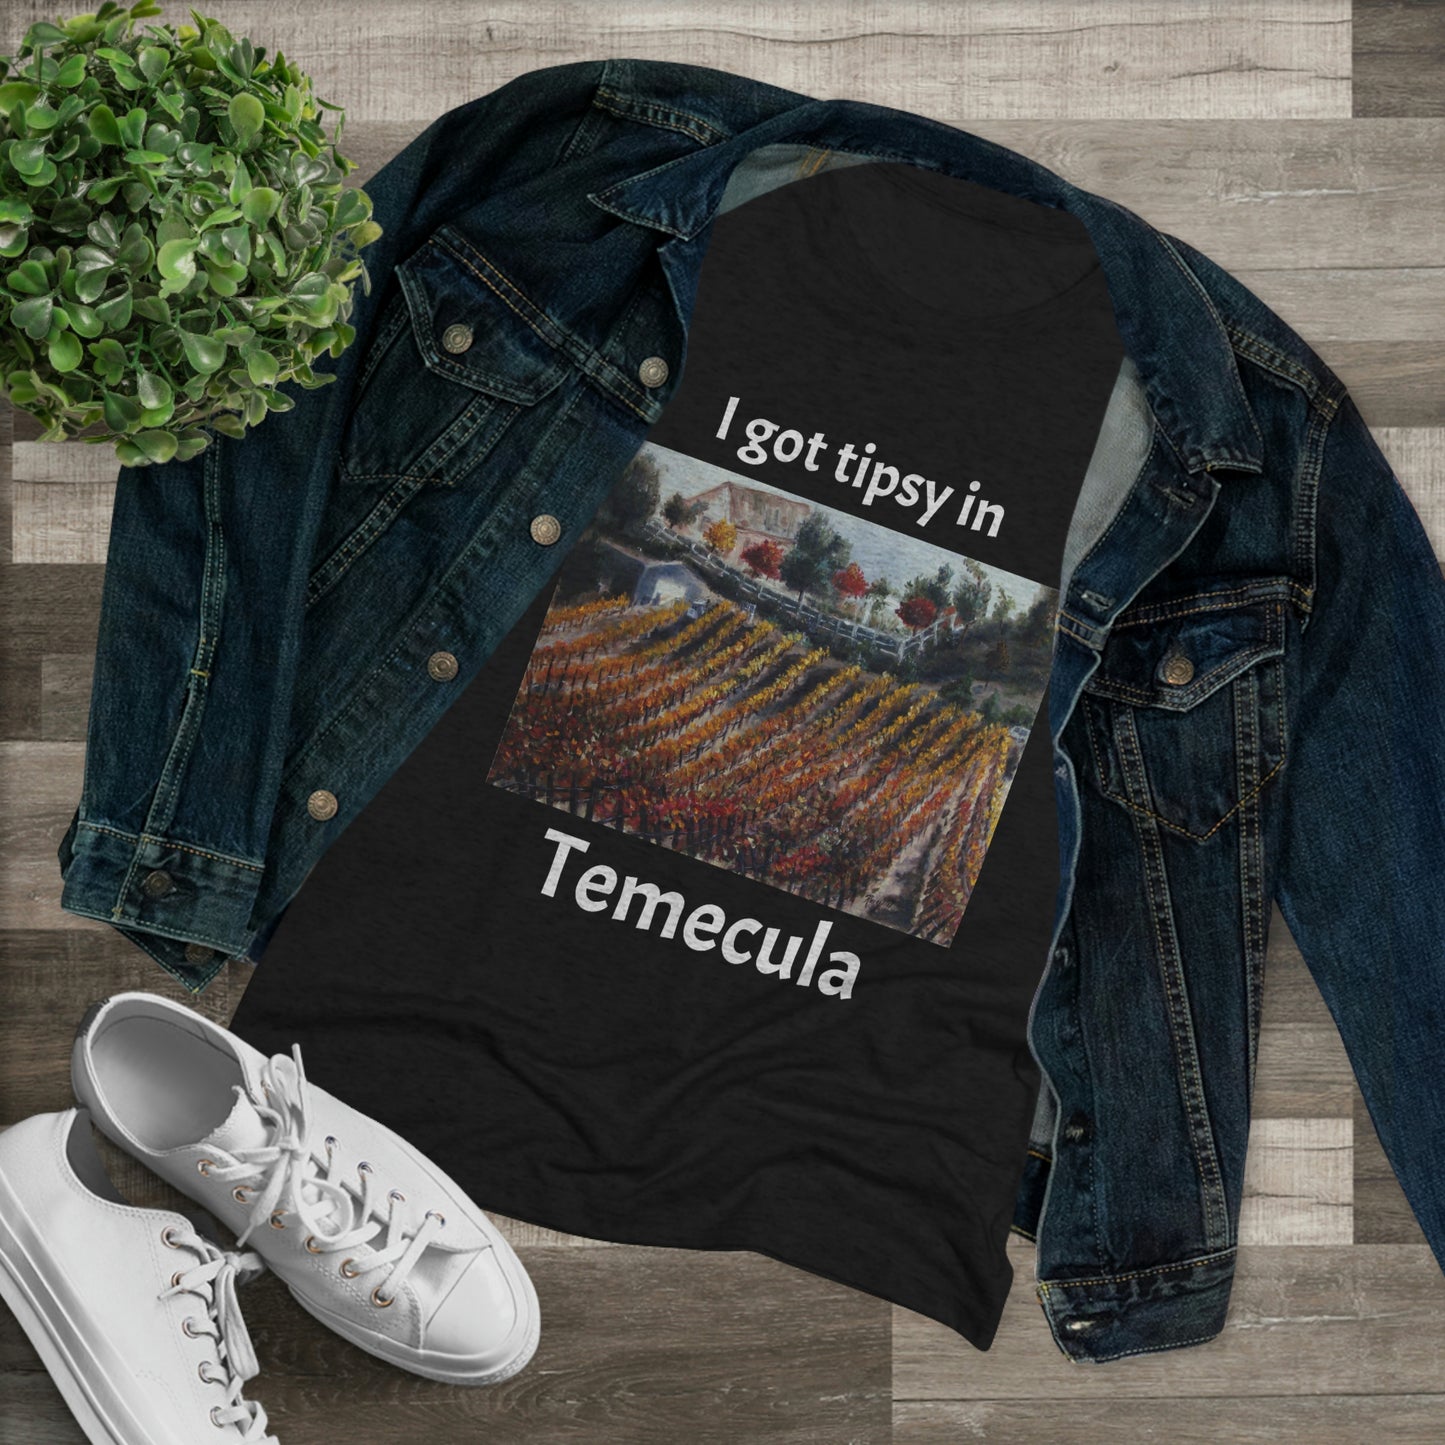 Je me suis ivre dans le tee-shirt Triblend ajusté pour femmes de Temecula, souvenir du tee-shirt Temecula avec « Vinedmia Winery in Autumn »